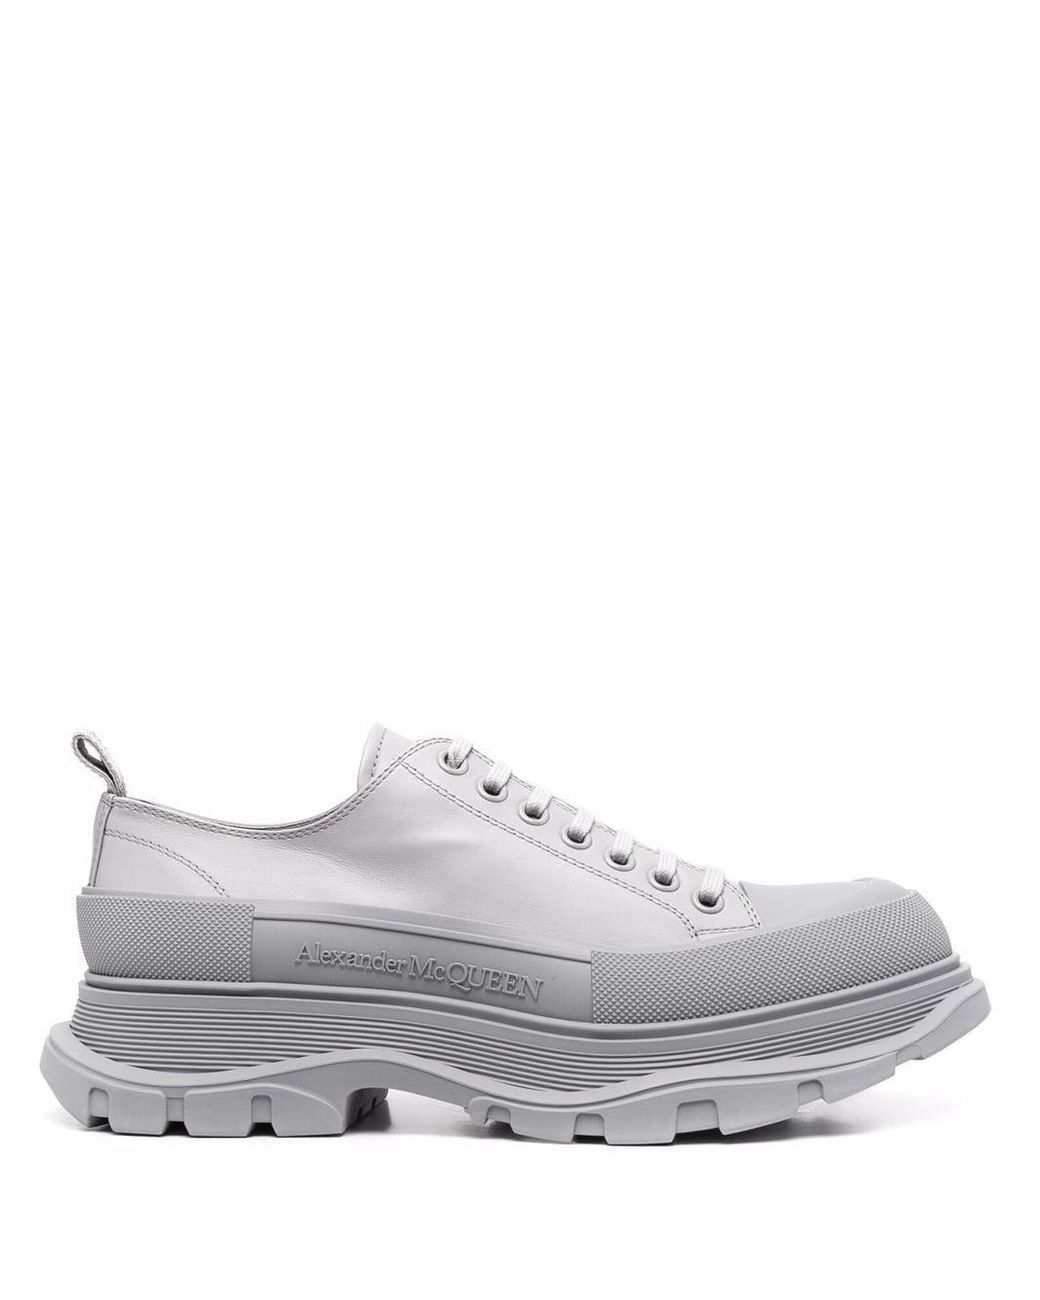 Alexander McQueen Tread Low Top Sneakers in Gray for Men | Lyst